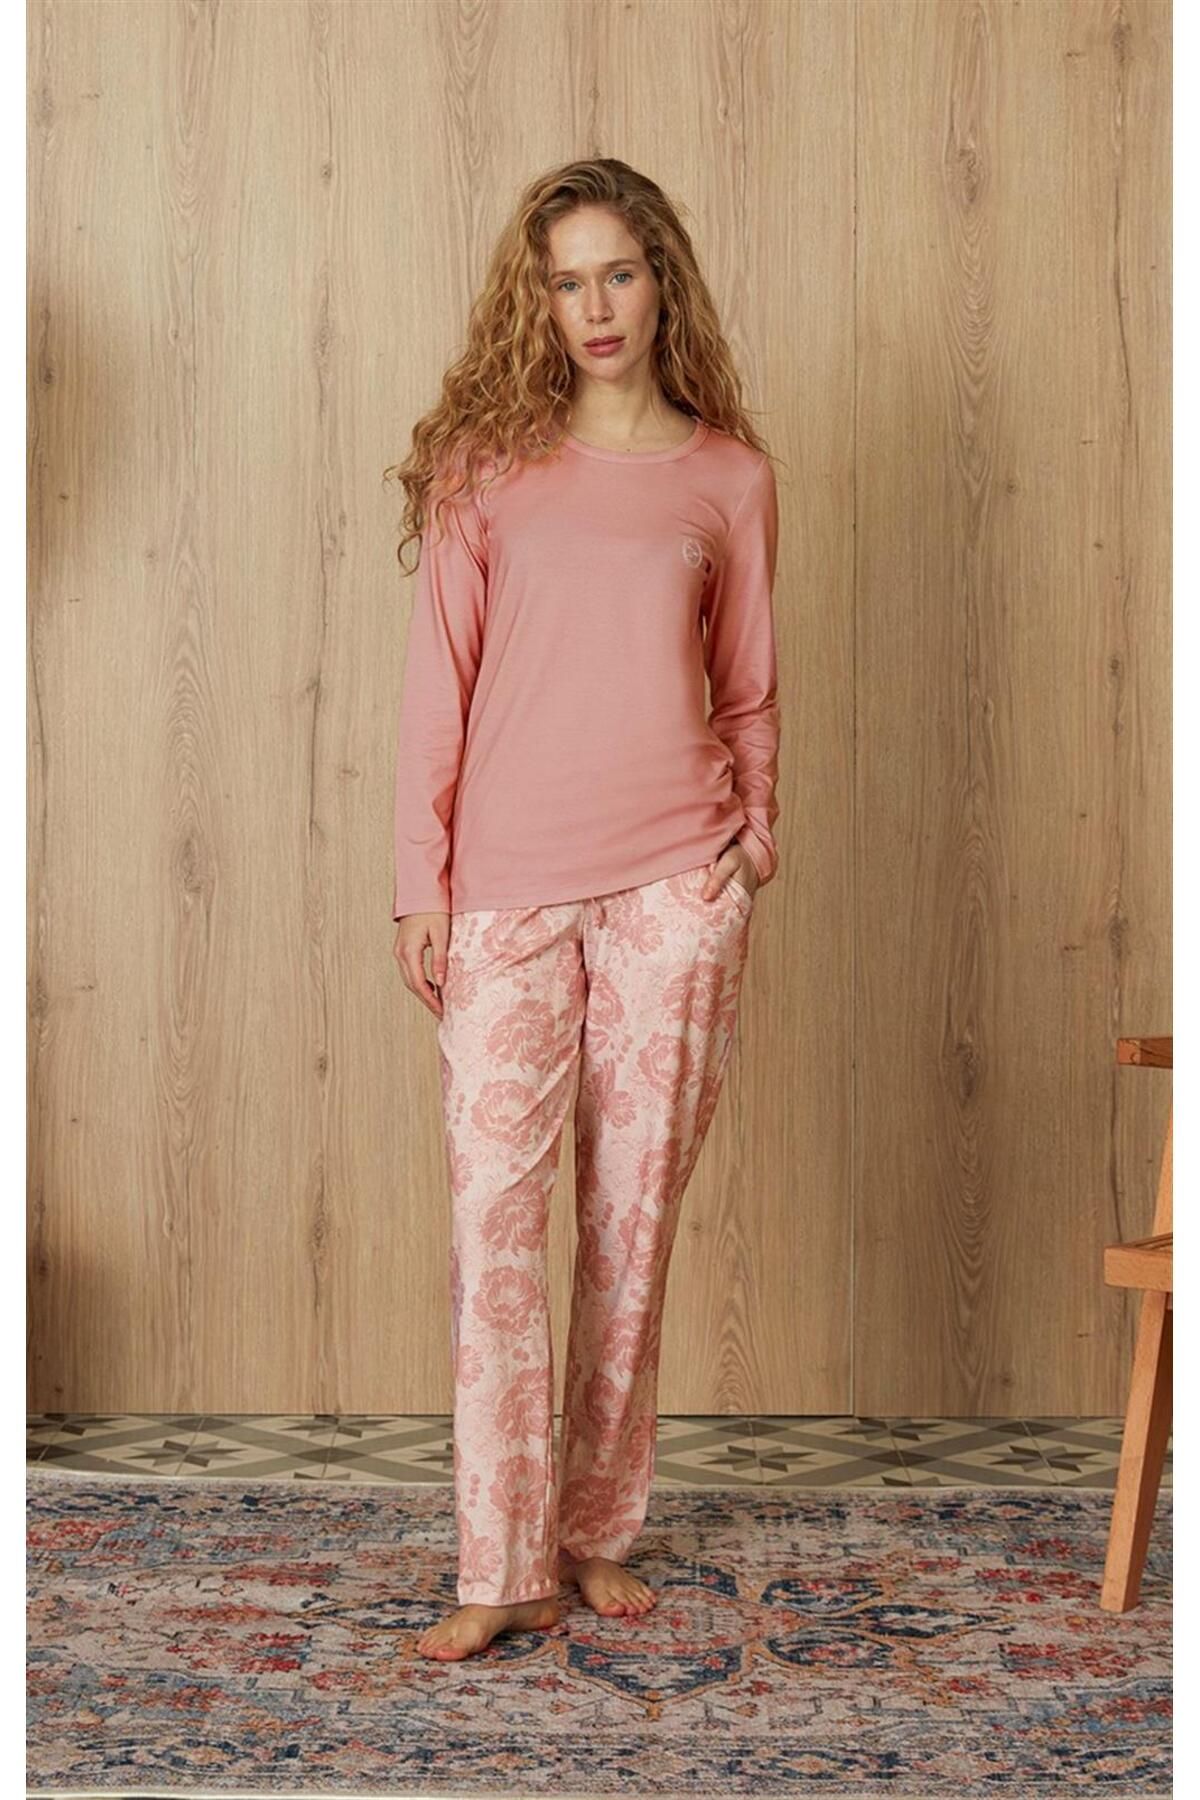 Doreanse Kadın Çiçek Desenli Somon Renk T-shirt Pijama Takımı 4124